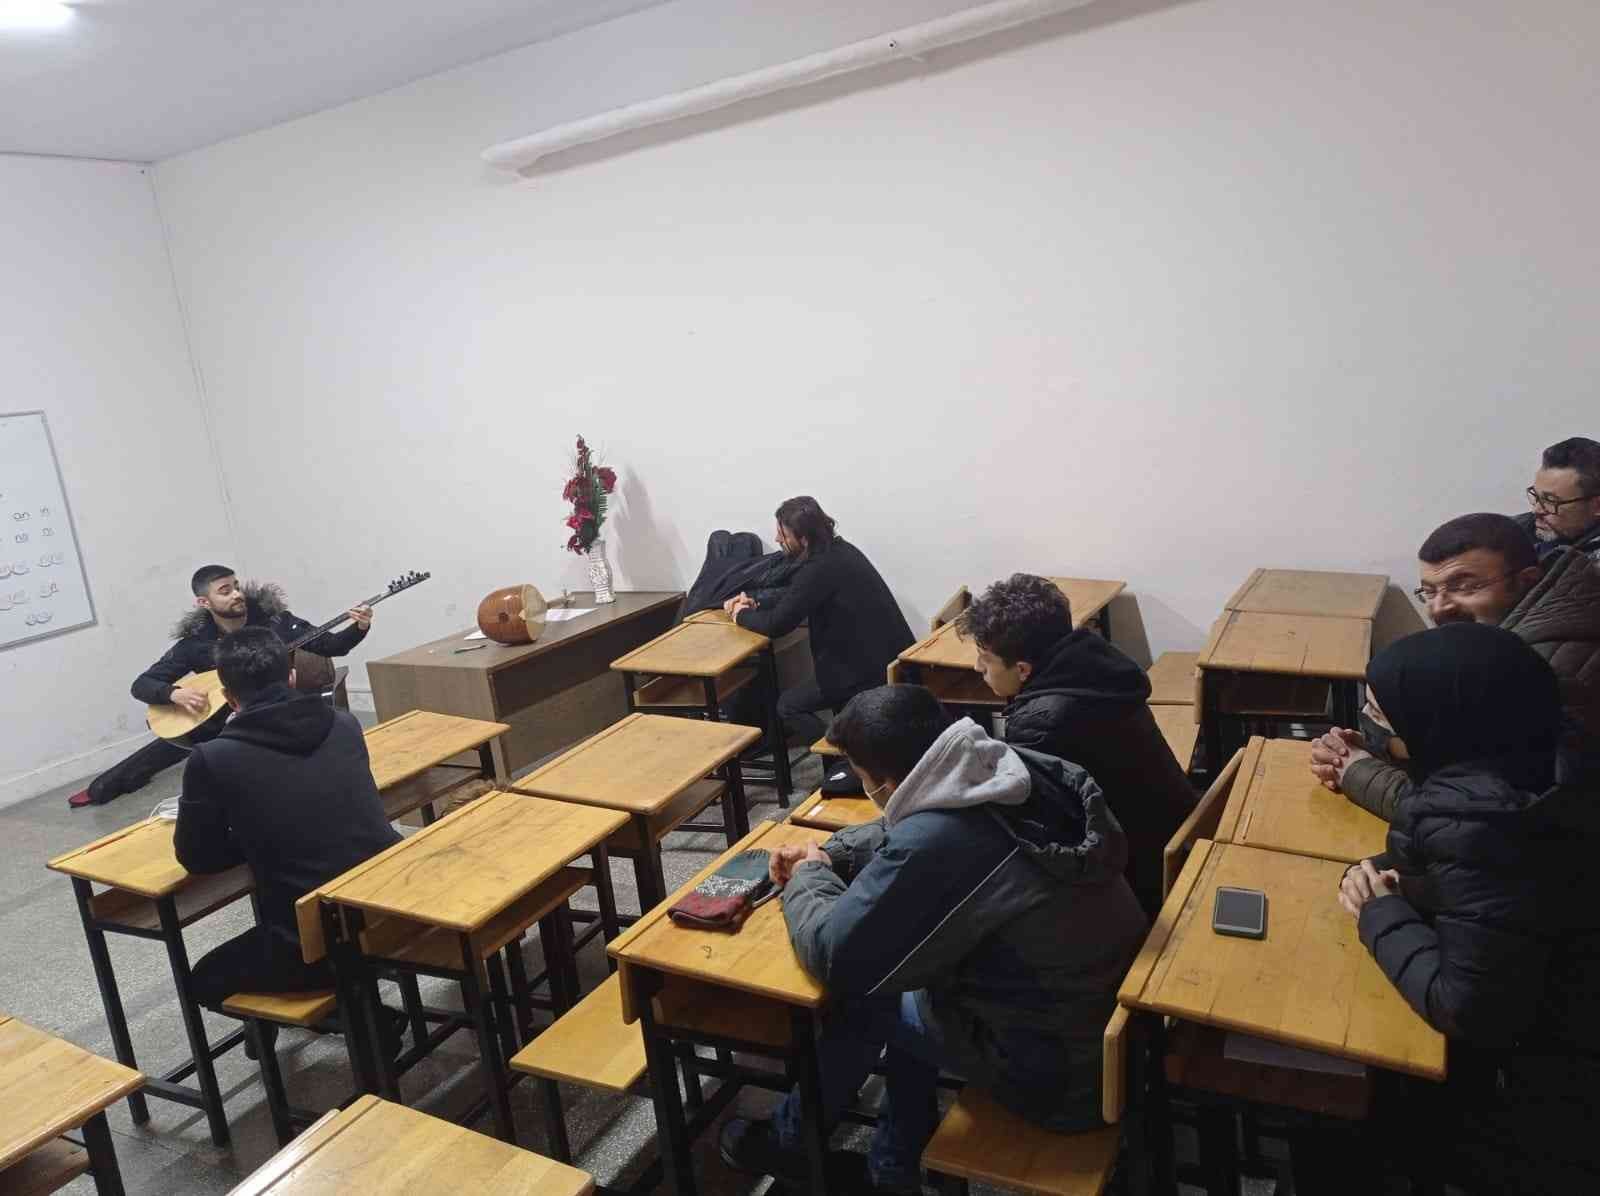 İnebolu Halk Eğitim Merkezinde bağlama kursu açıldı #kastamonu